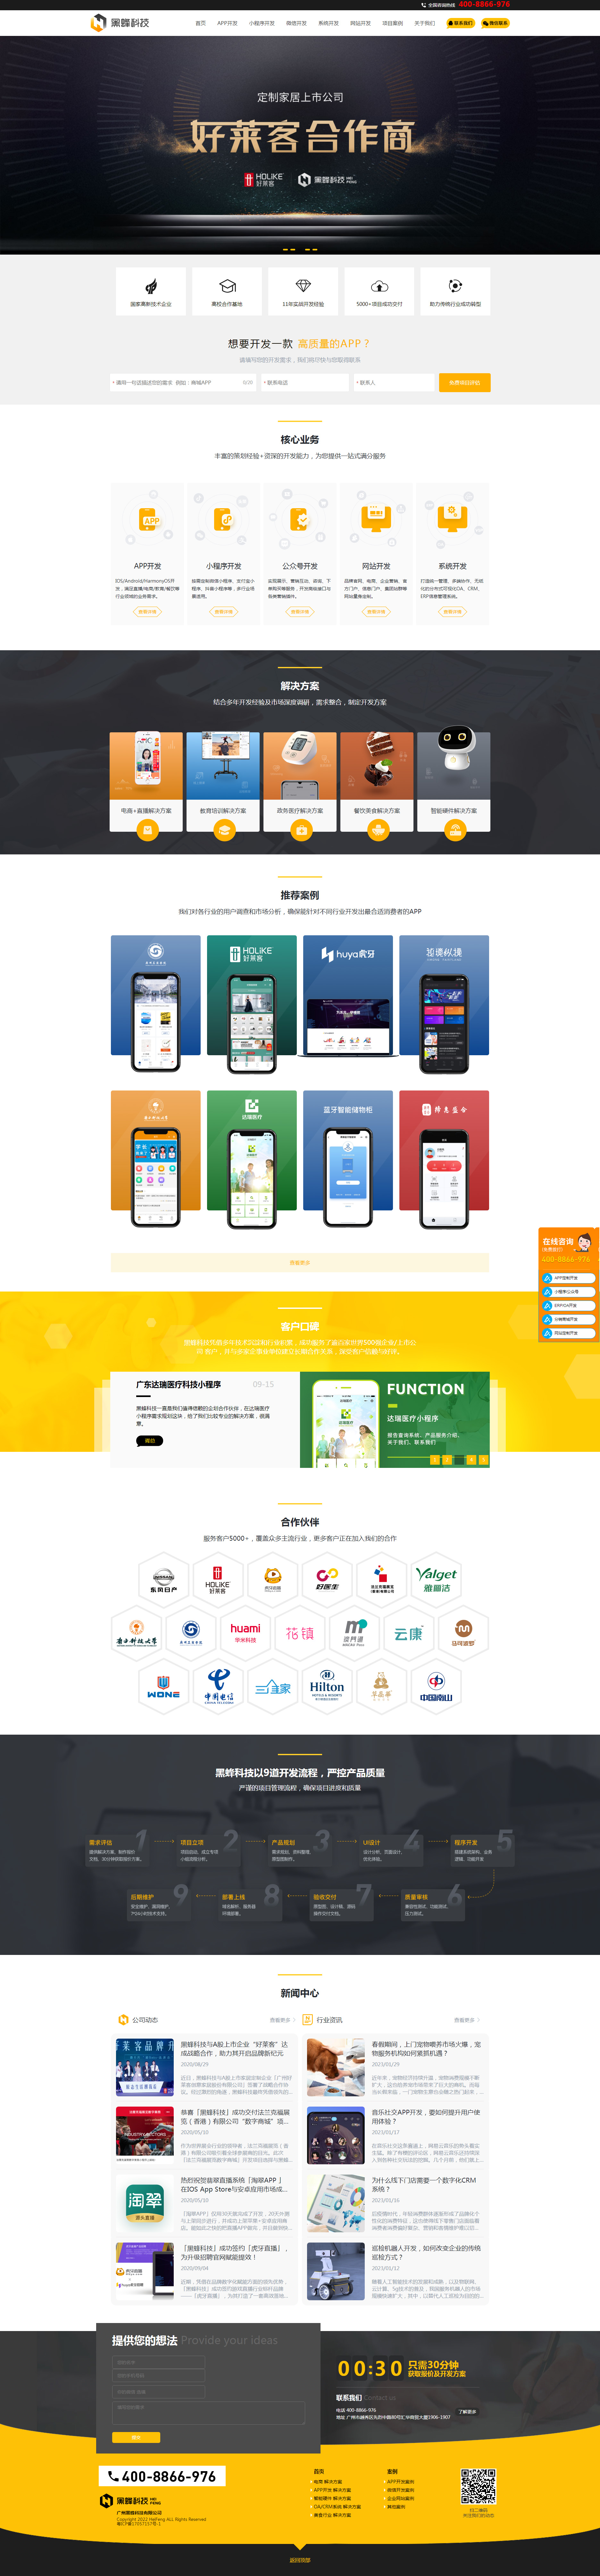 广州黑蜂科技有限公司网站设计效果图